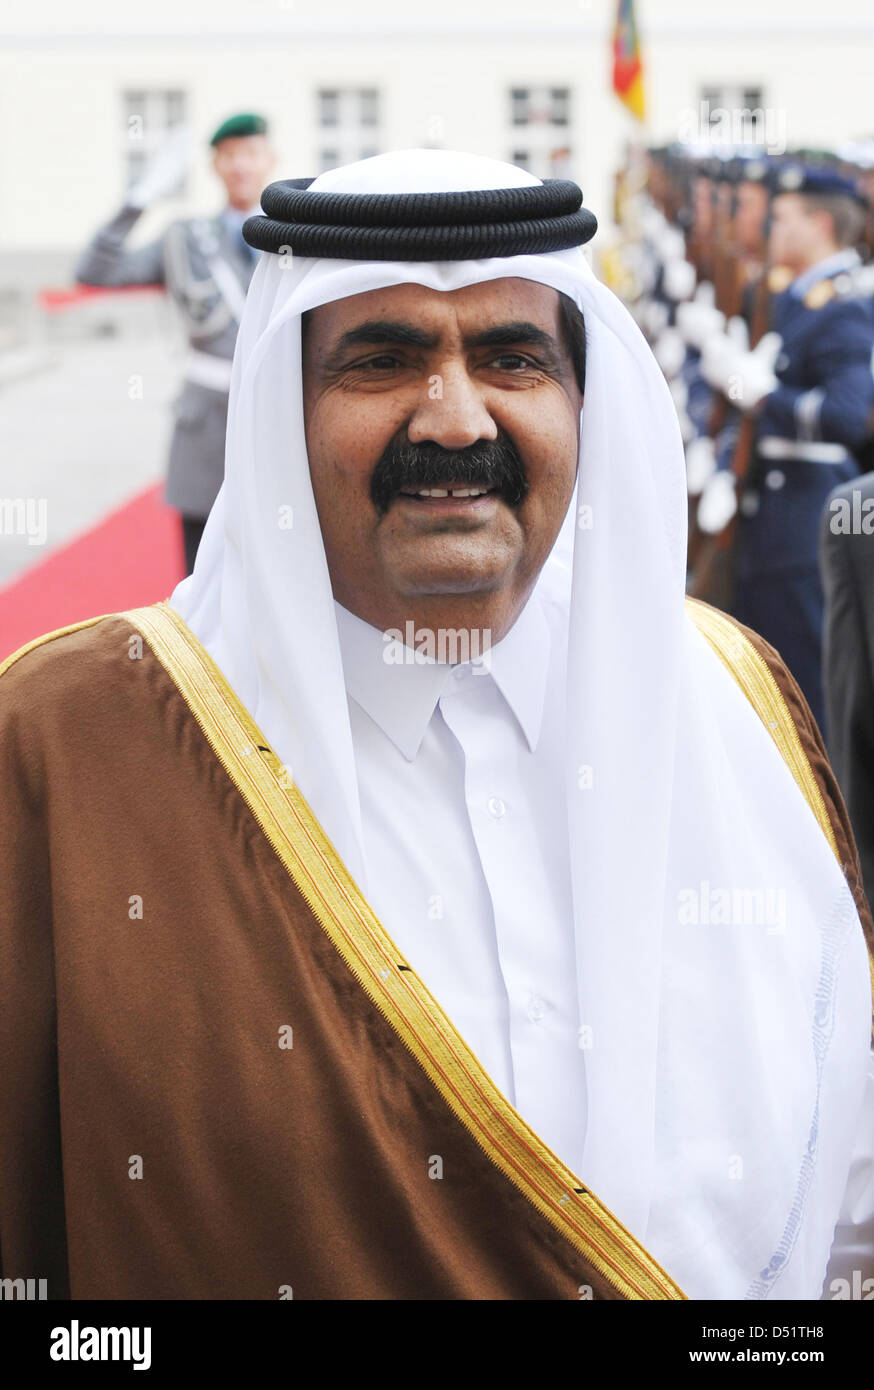 sheik-hamad-bin-khalifa-al-thani-the-emir-of-the-state-of-qatar-is-D51TH8.jpg